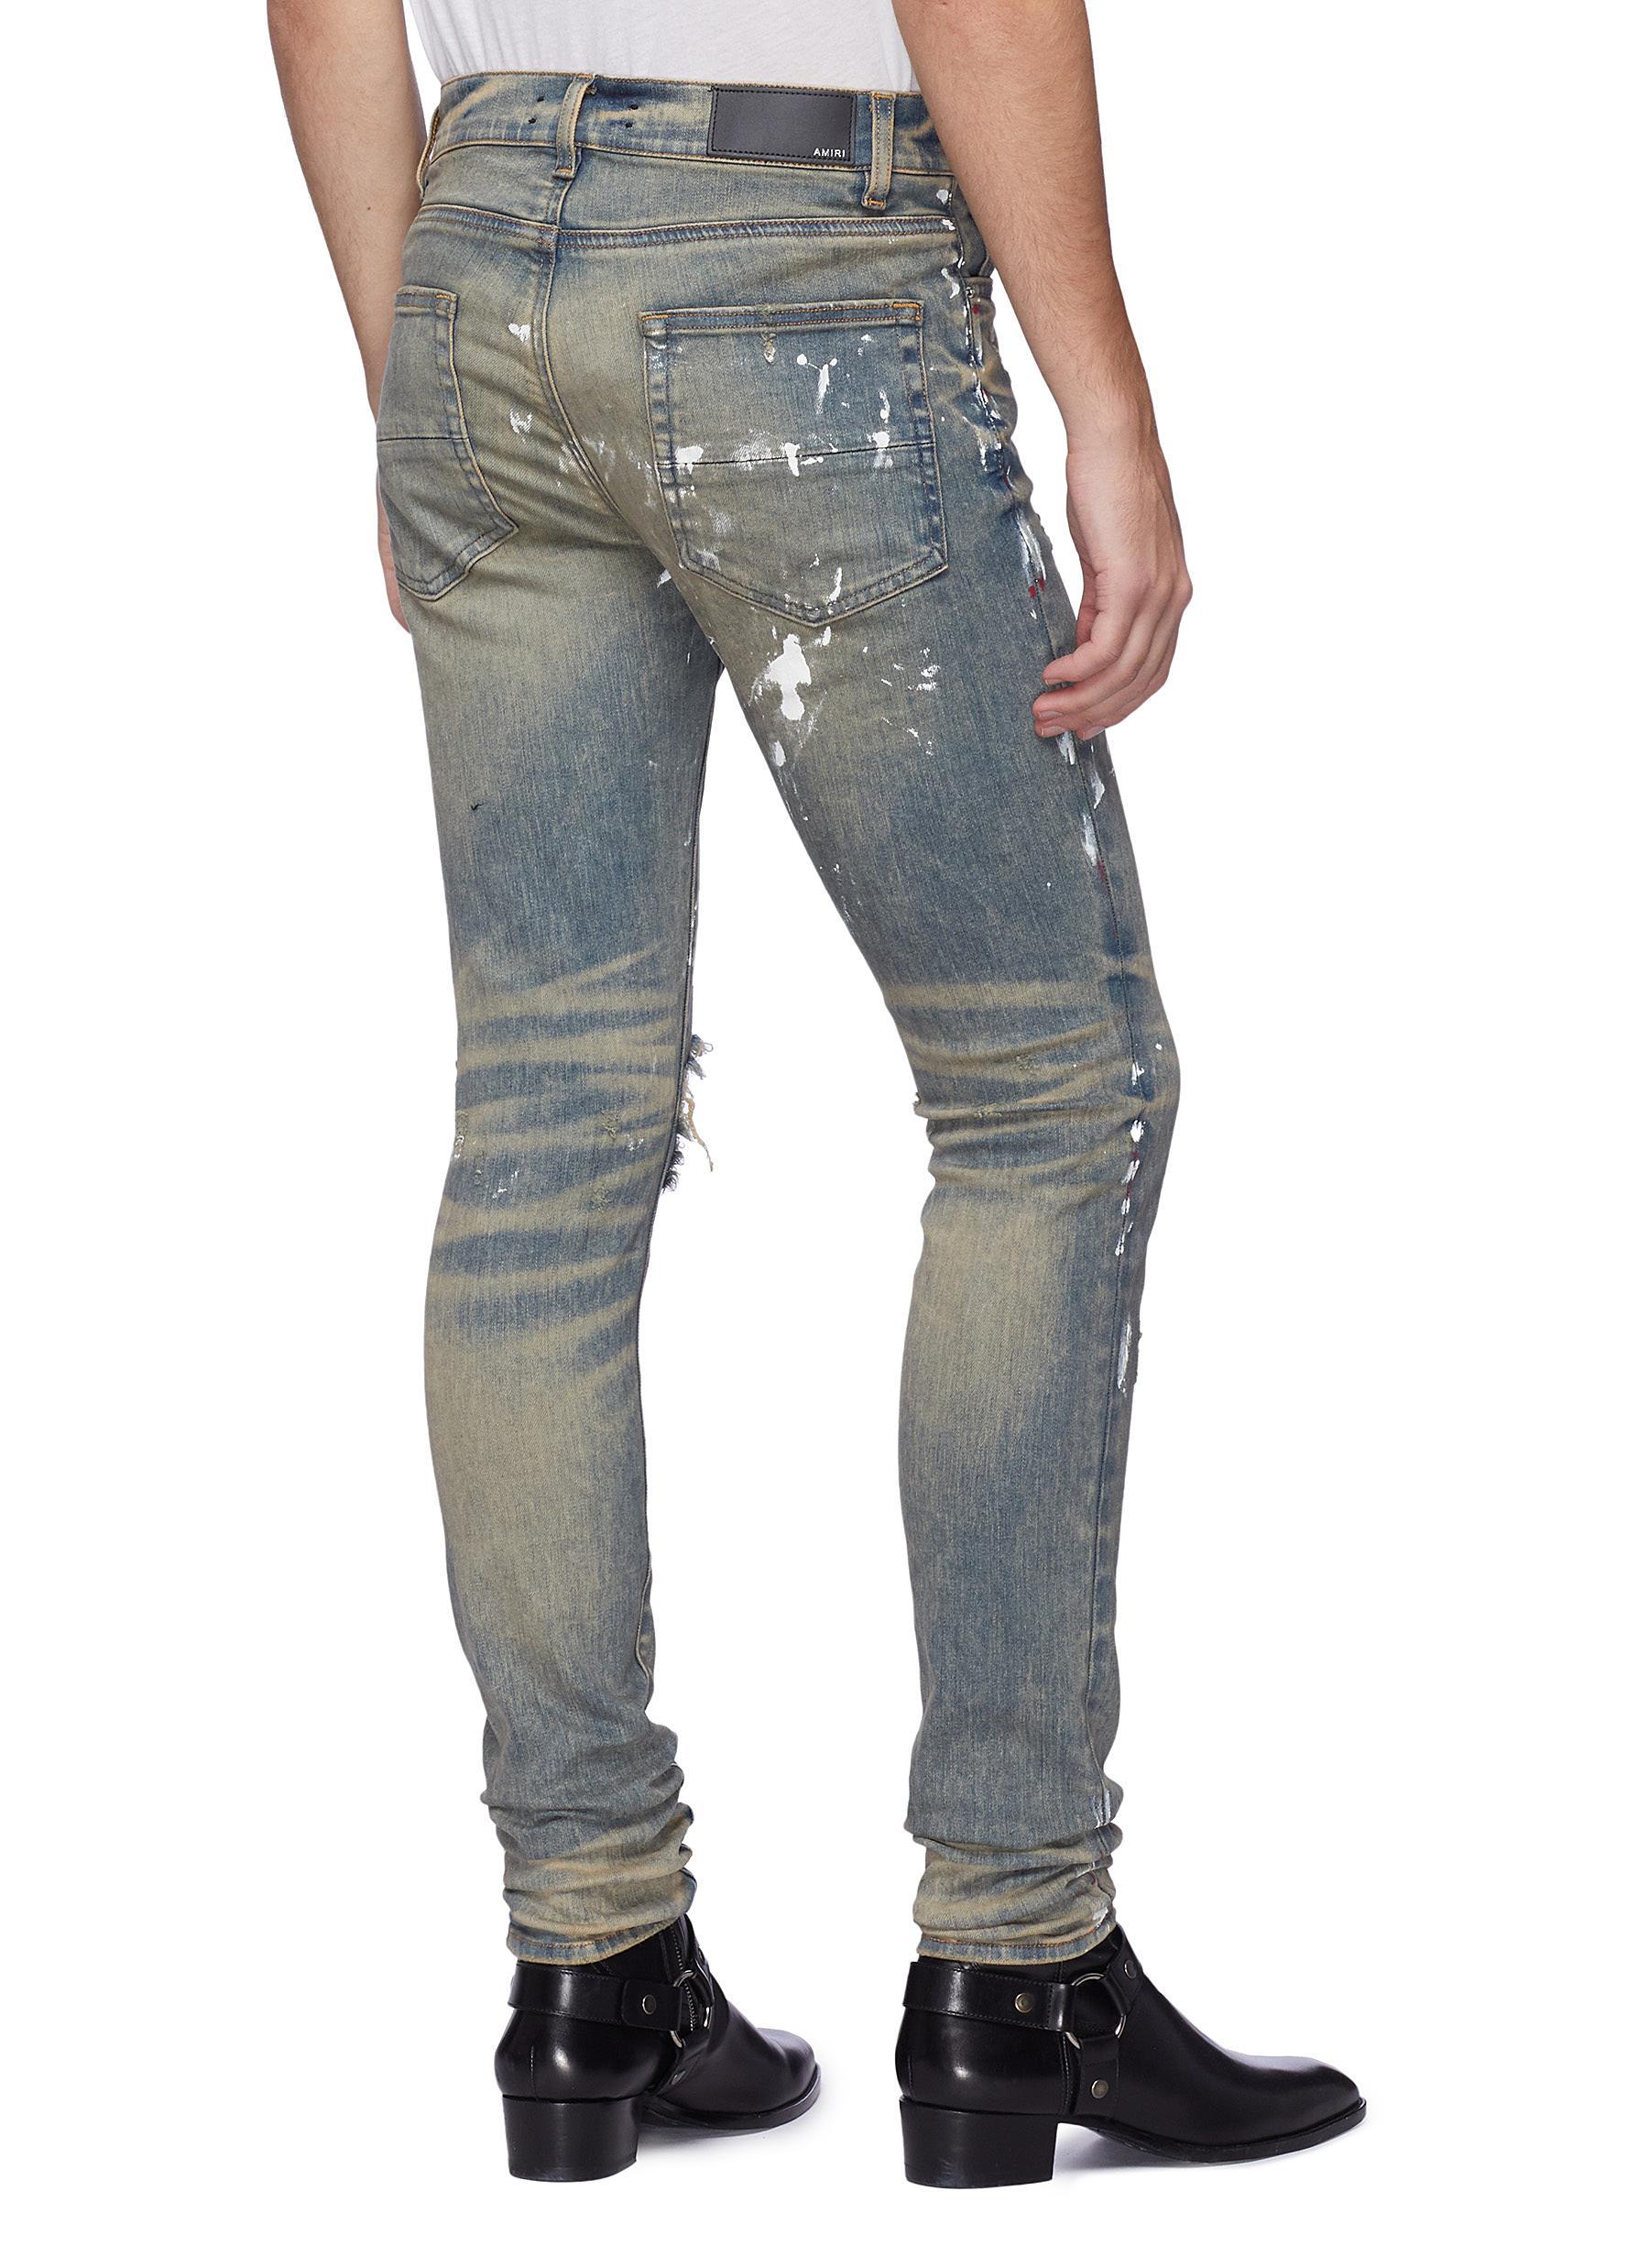 Amiri Denim 'artist' Paint Splatter Ripped Skinny Jeans for Men - Lyst